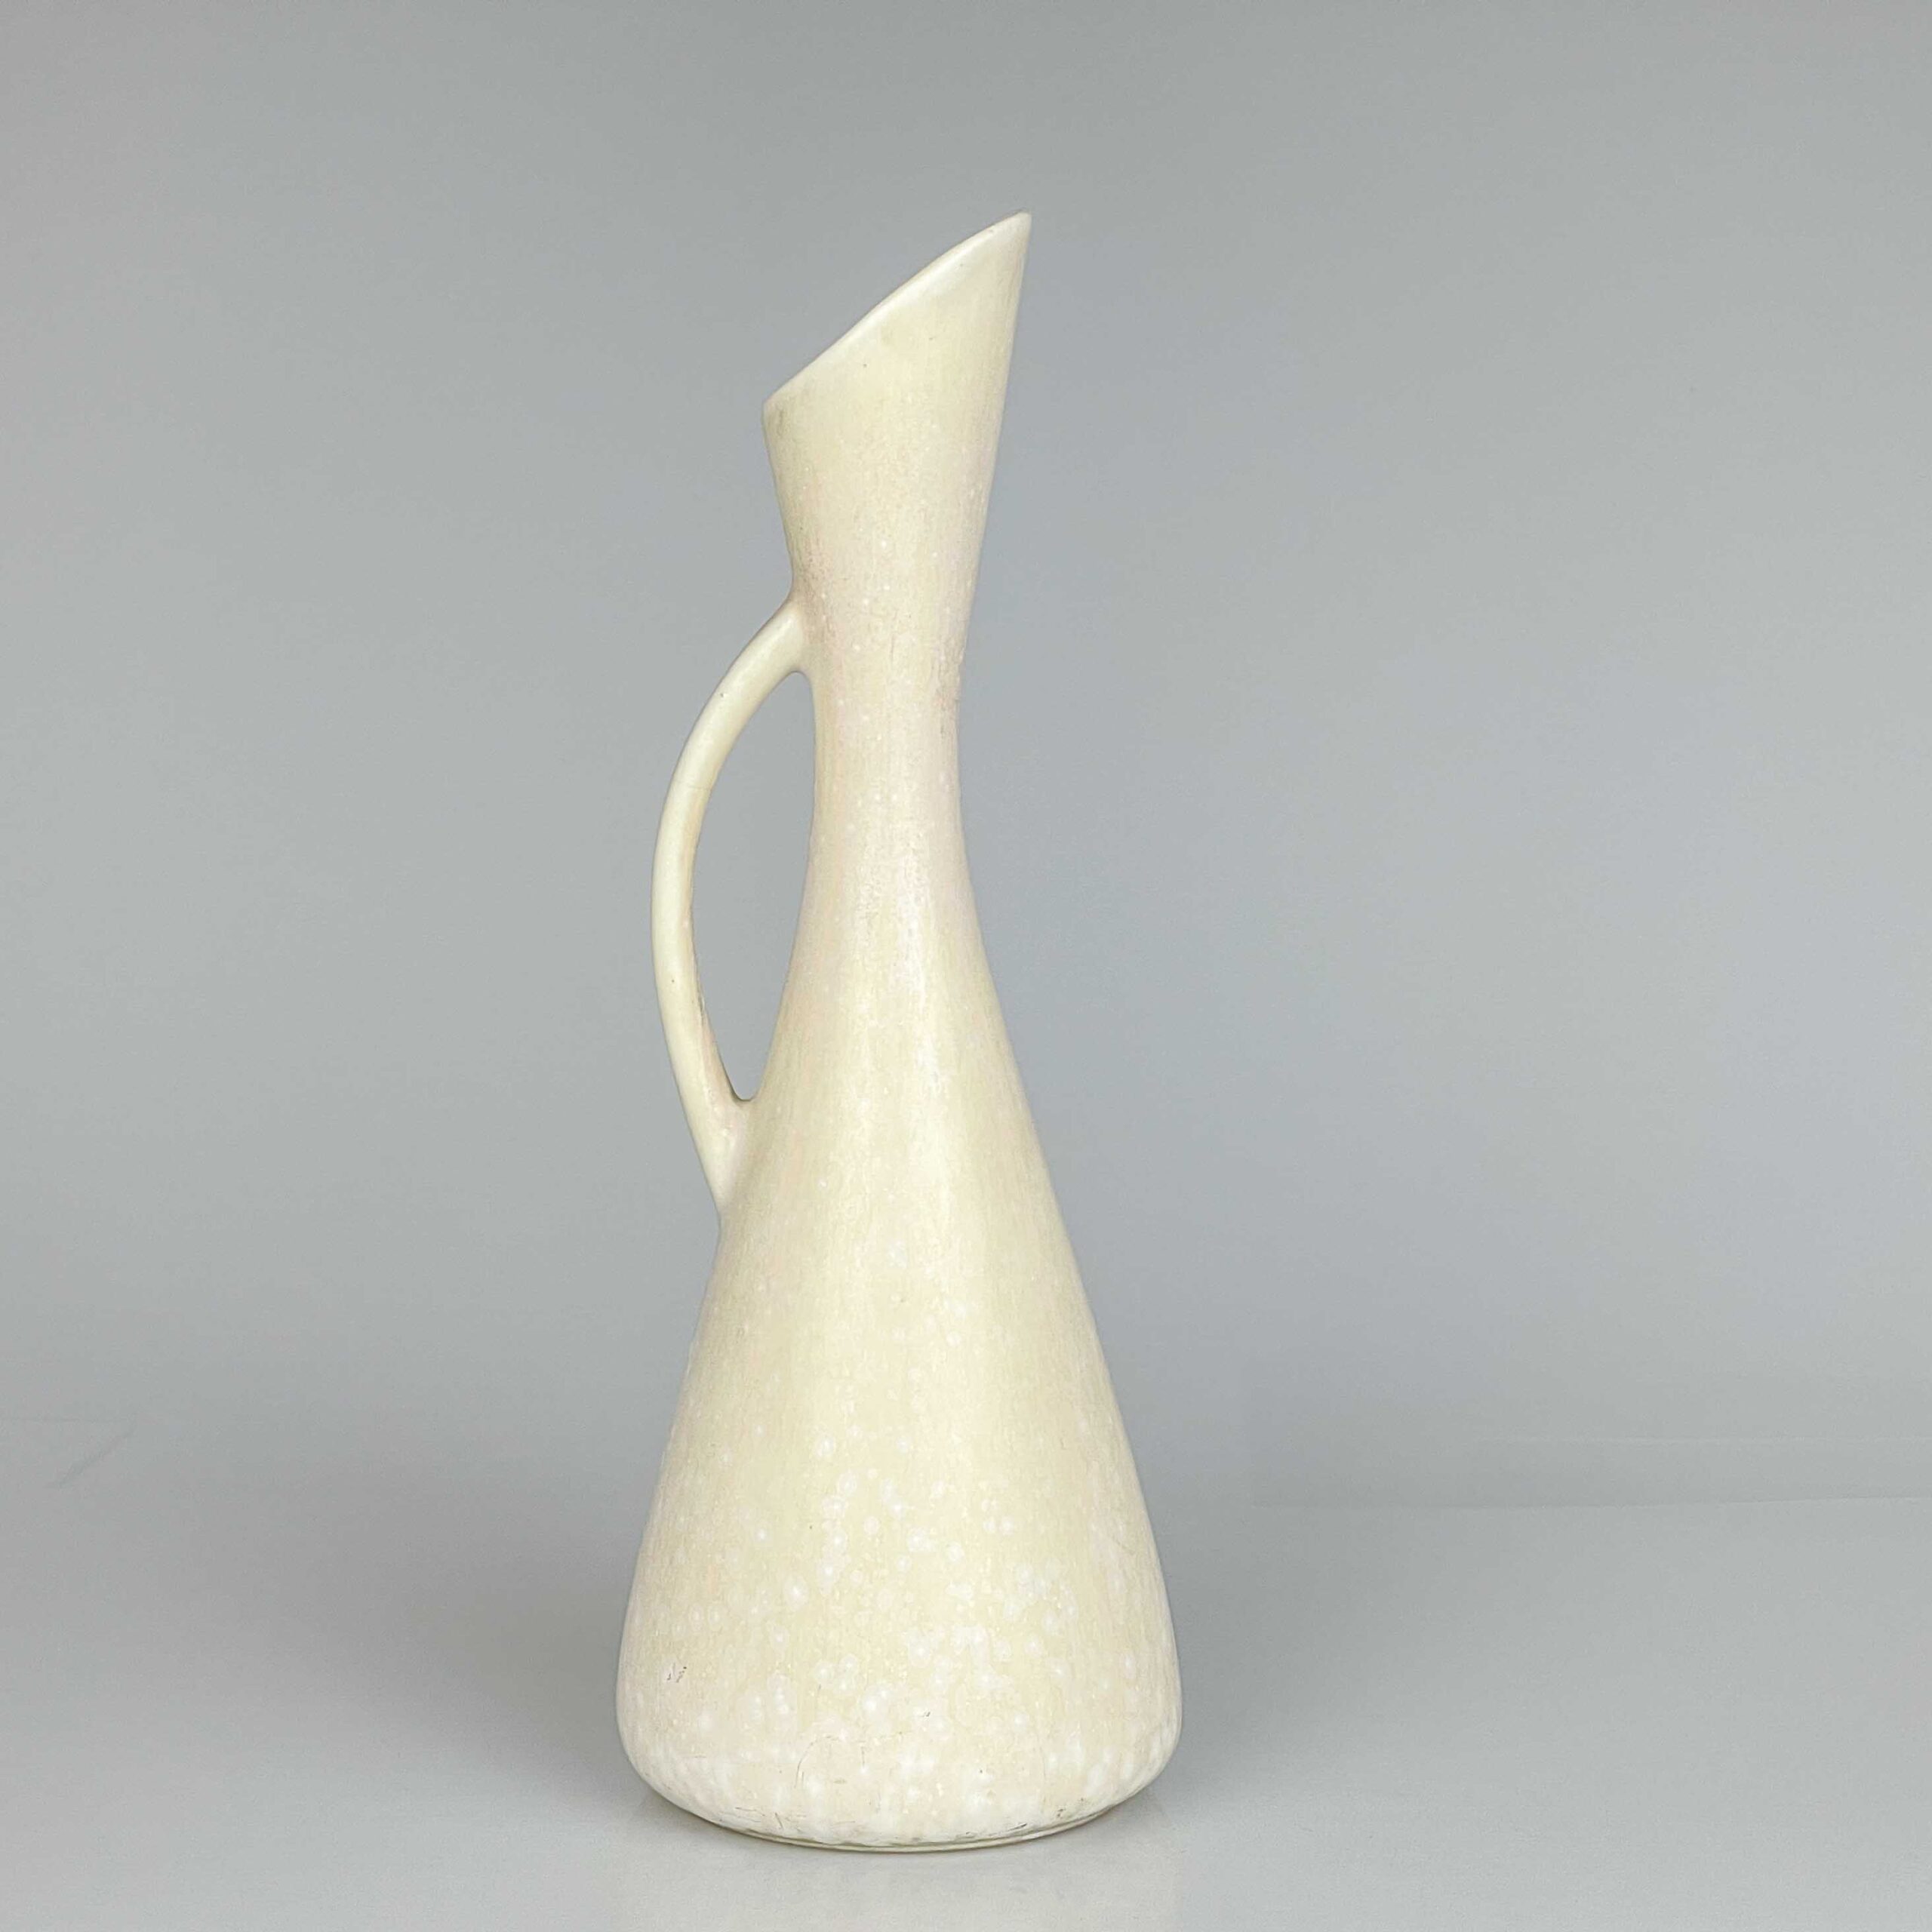 Gunnar Nylund - A glazed stoneware vase / pitcher, model AUD - Rörstrand Sweden, ca. 1955